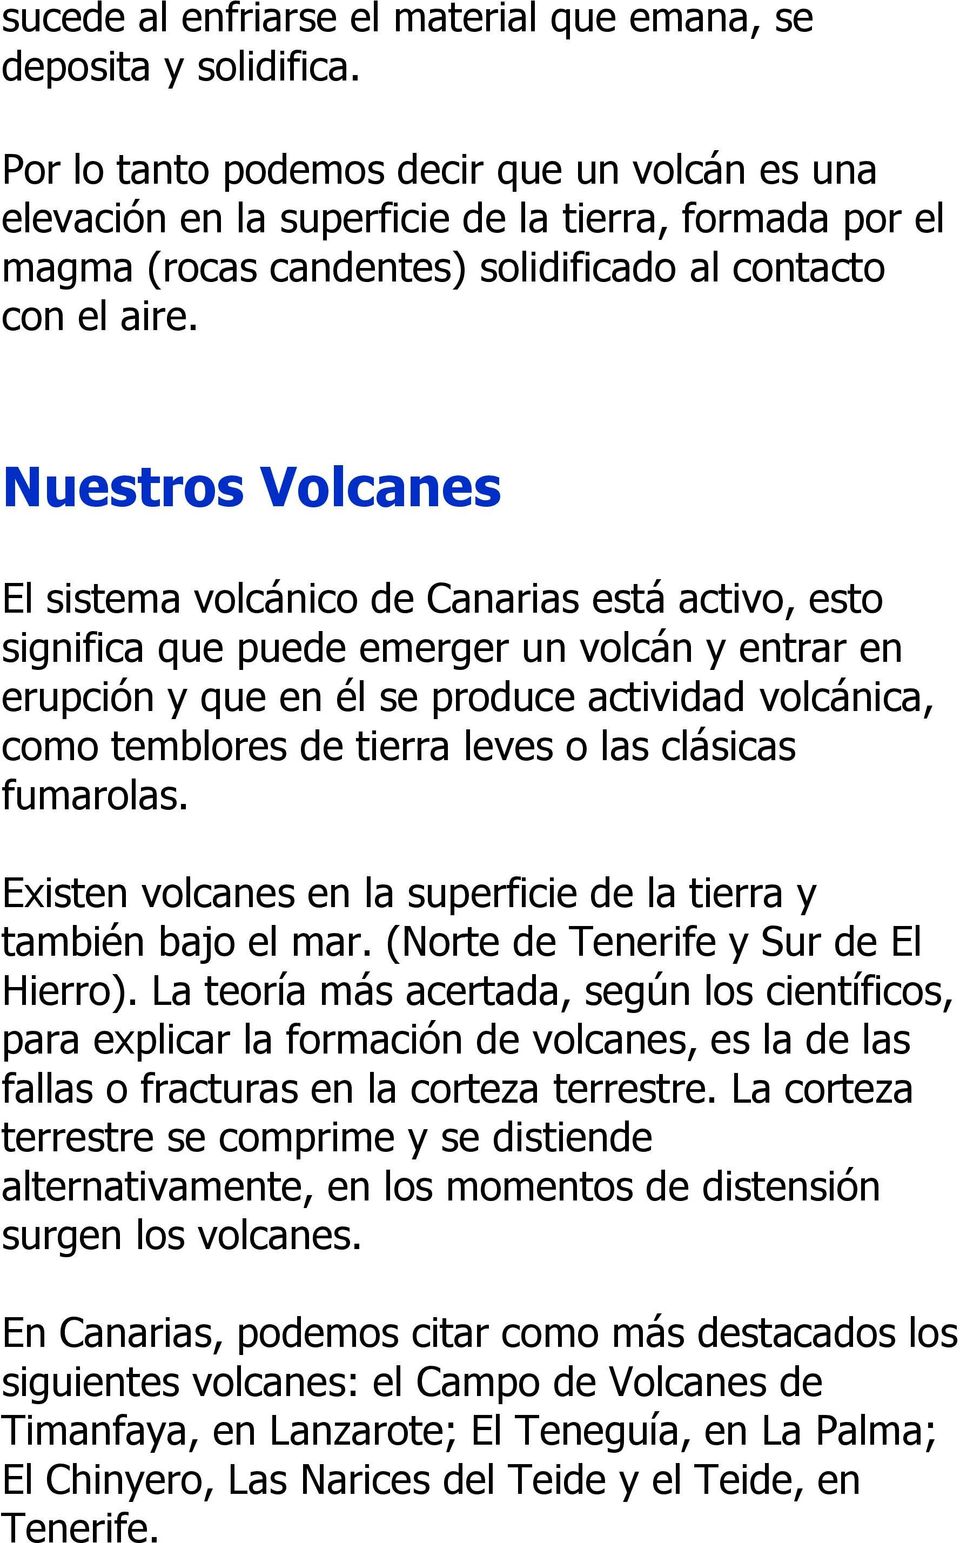 Nuestros Volcanes El sistema volcánico de Canarias está activo, esto significa que puede emerger un volcán y entrar en erupción y que en él se produce actividad volcánica, como temblores de tierra